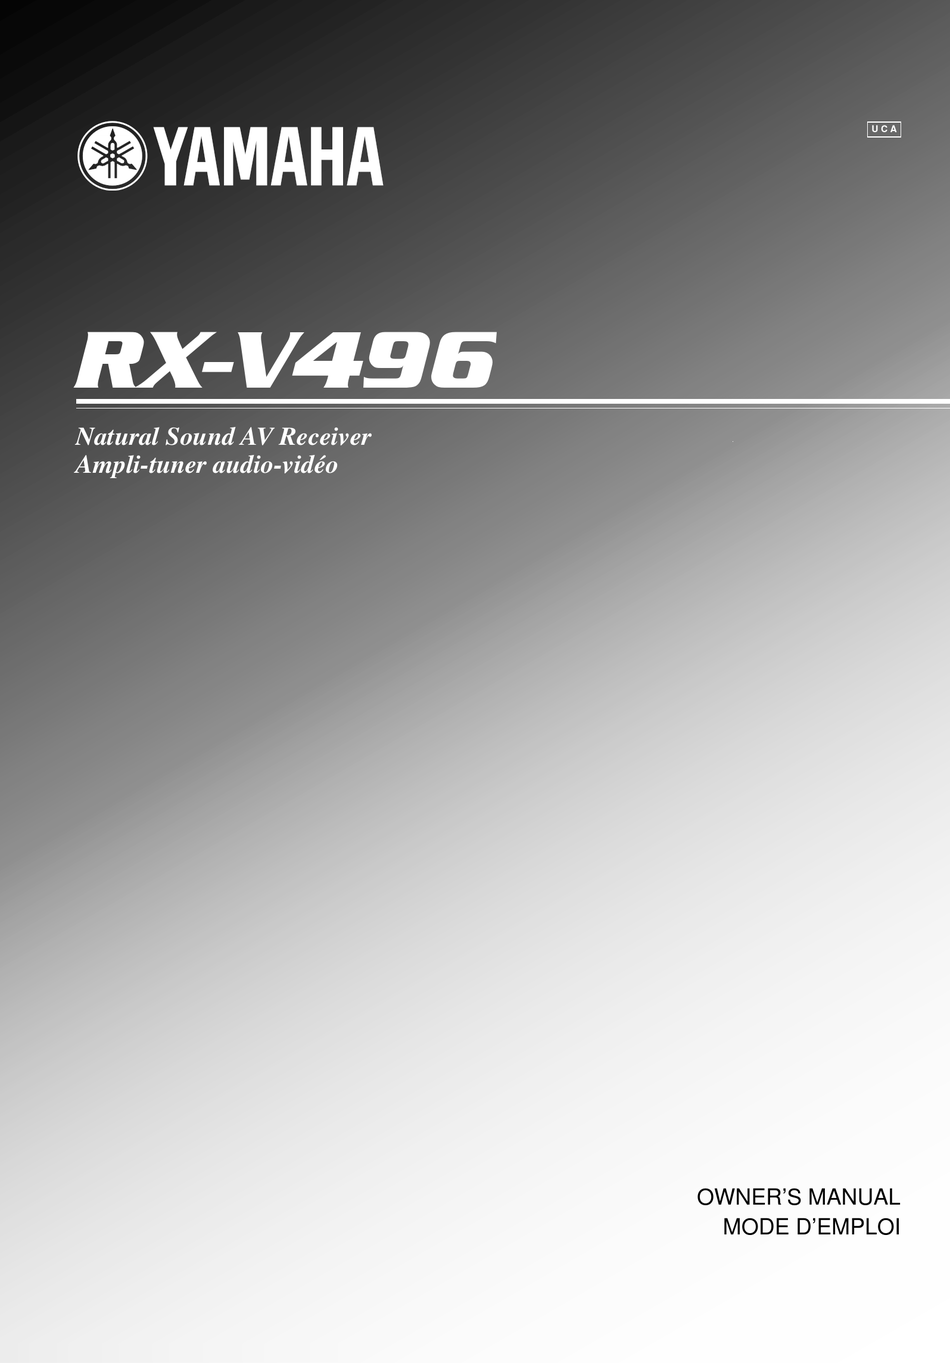 YAMAHA RX-V496 OWNER'S MANUAL Pdf Download | ManualsLib